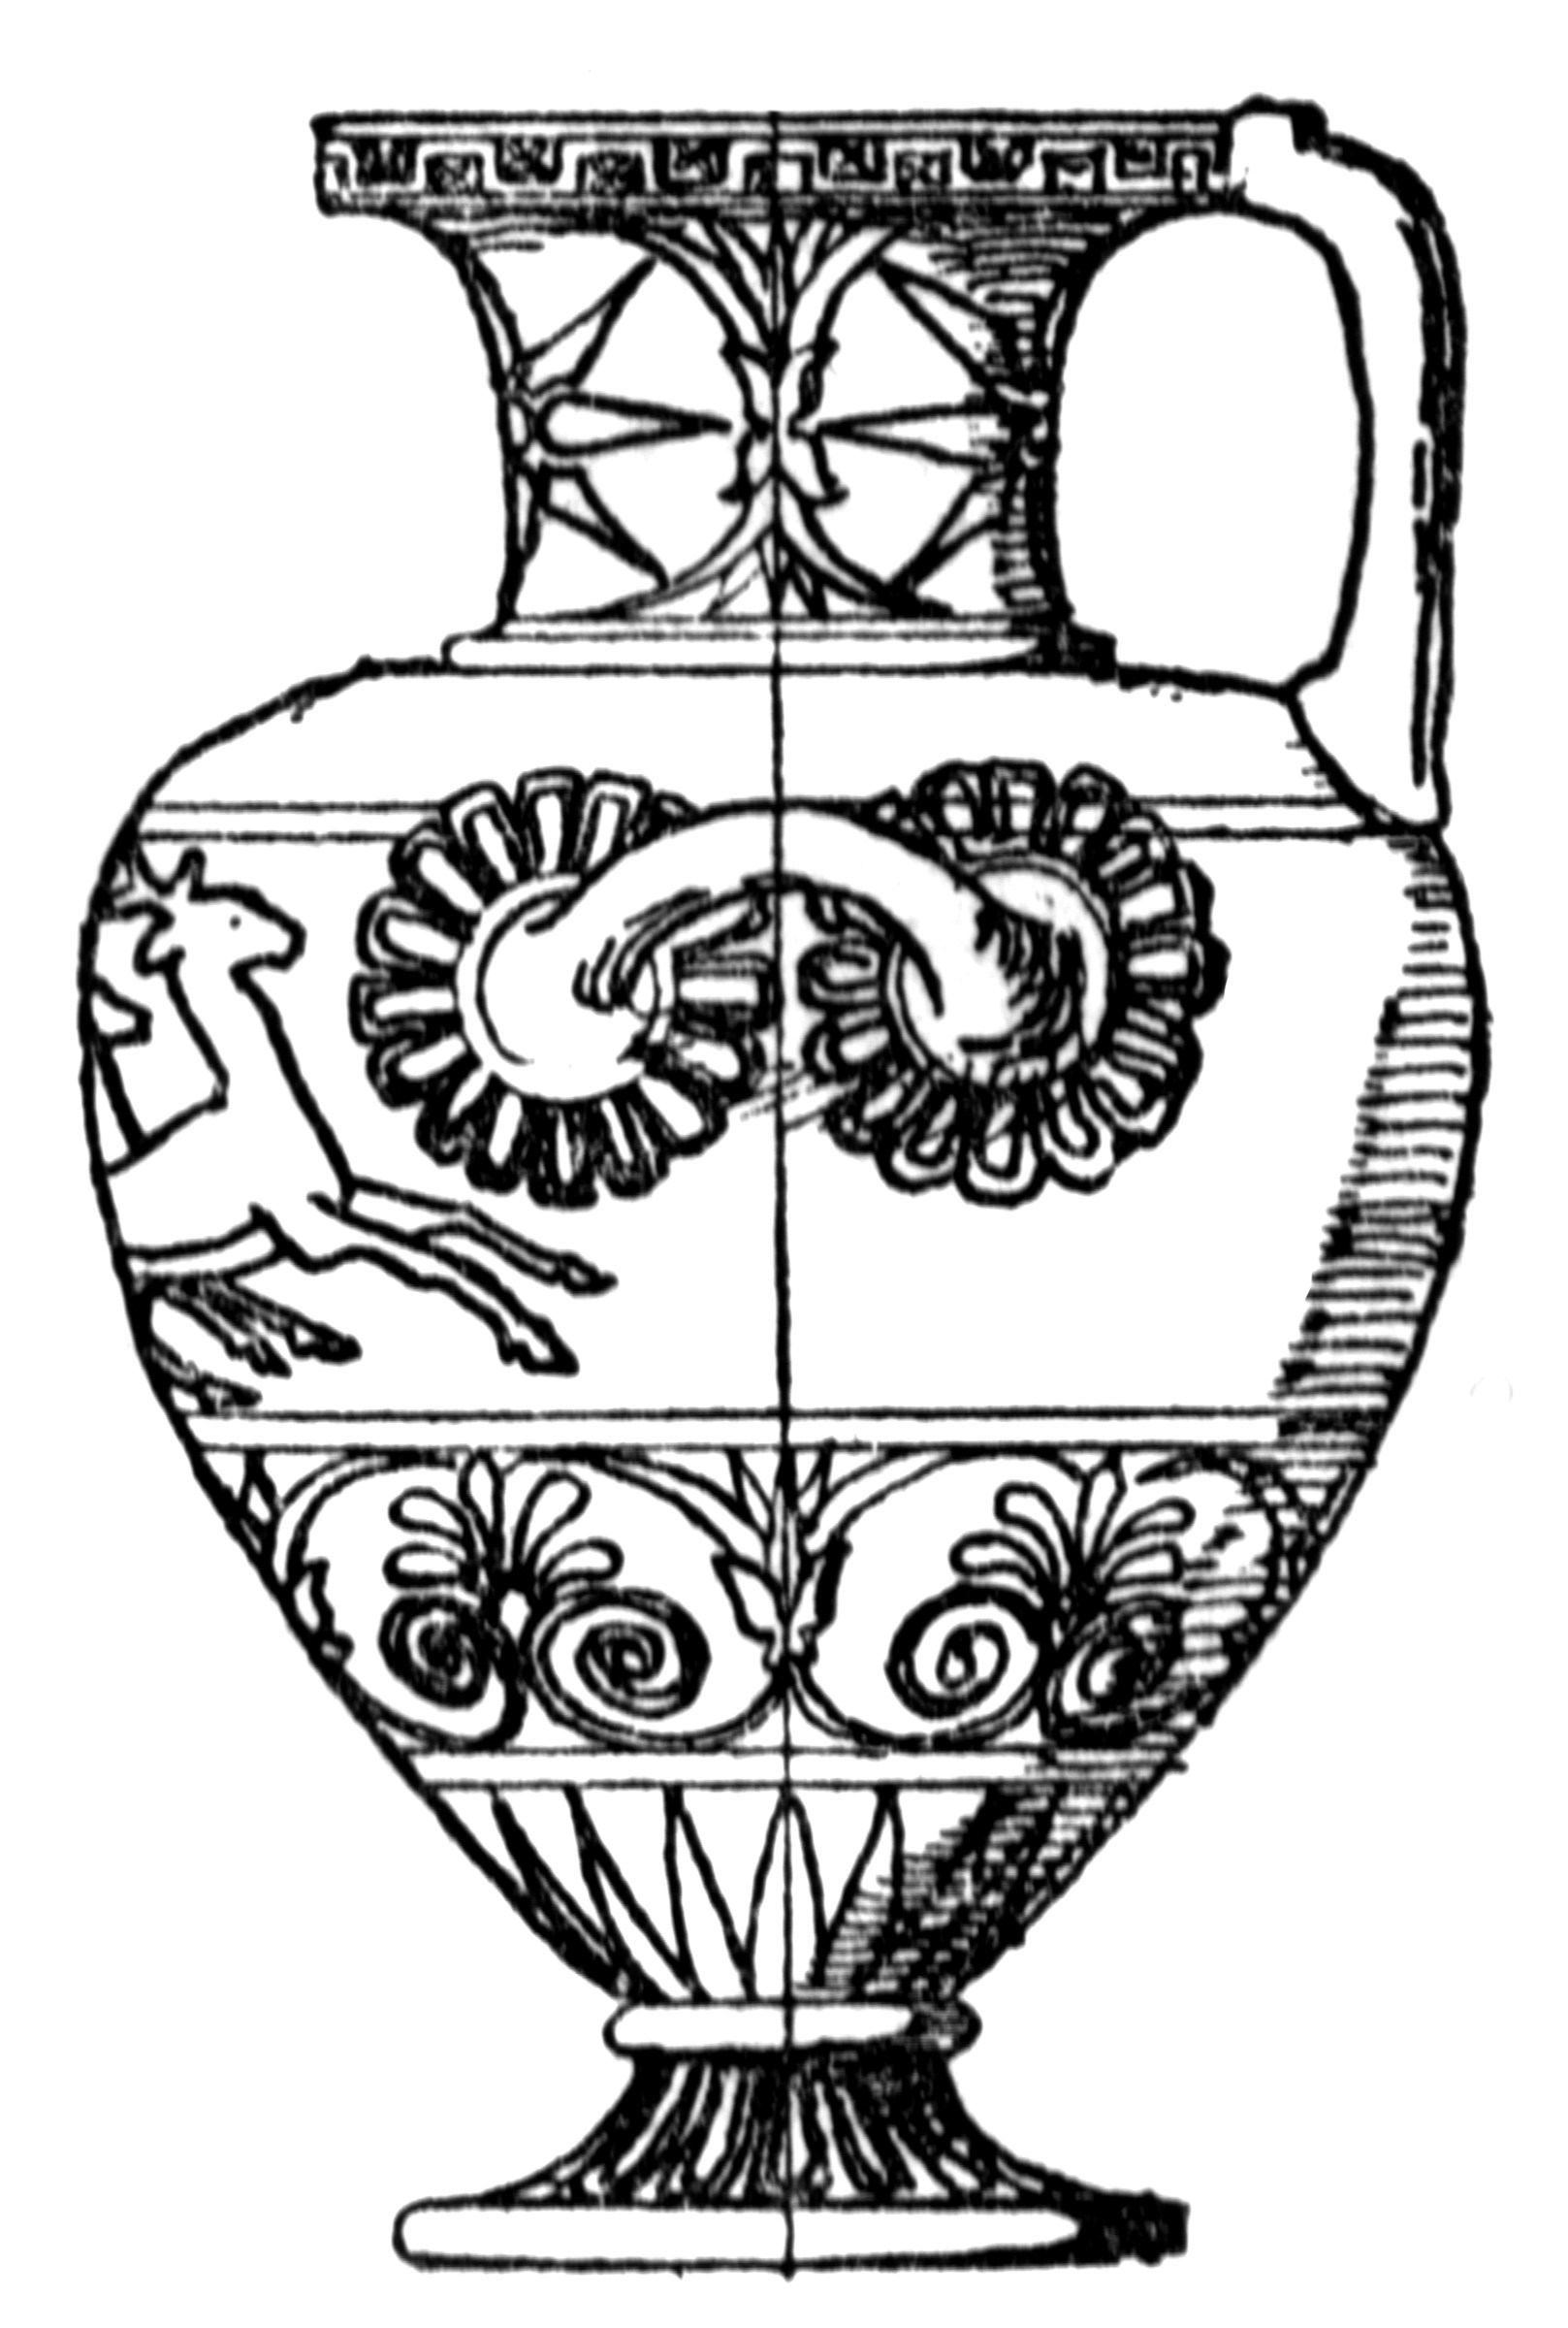 Греческий орнамент - меандр, лотос и пальметта в интерьере